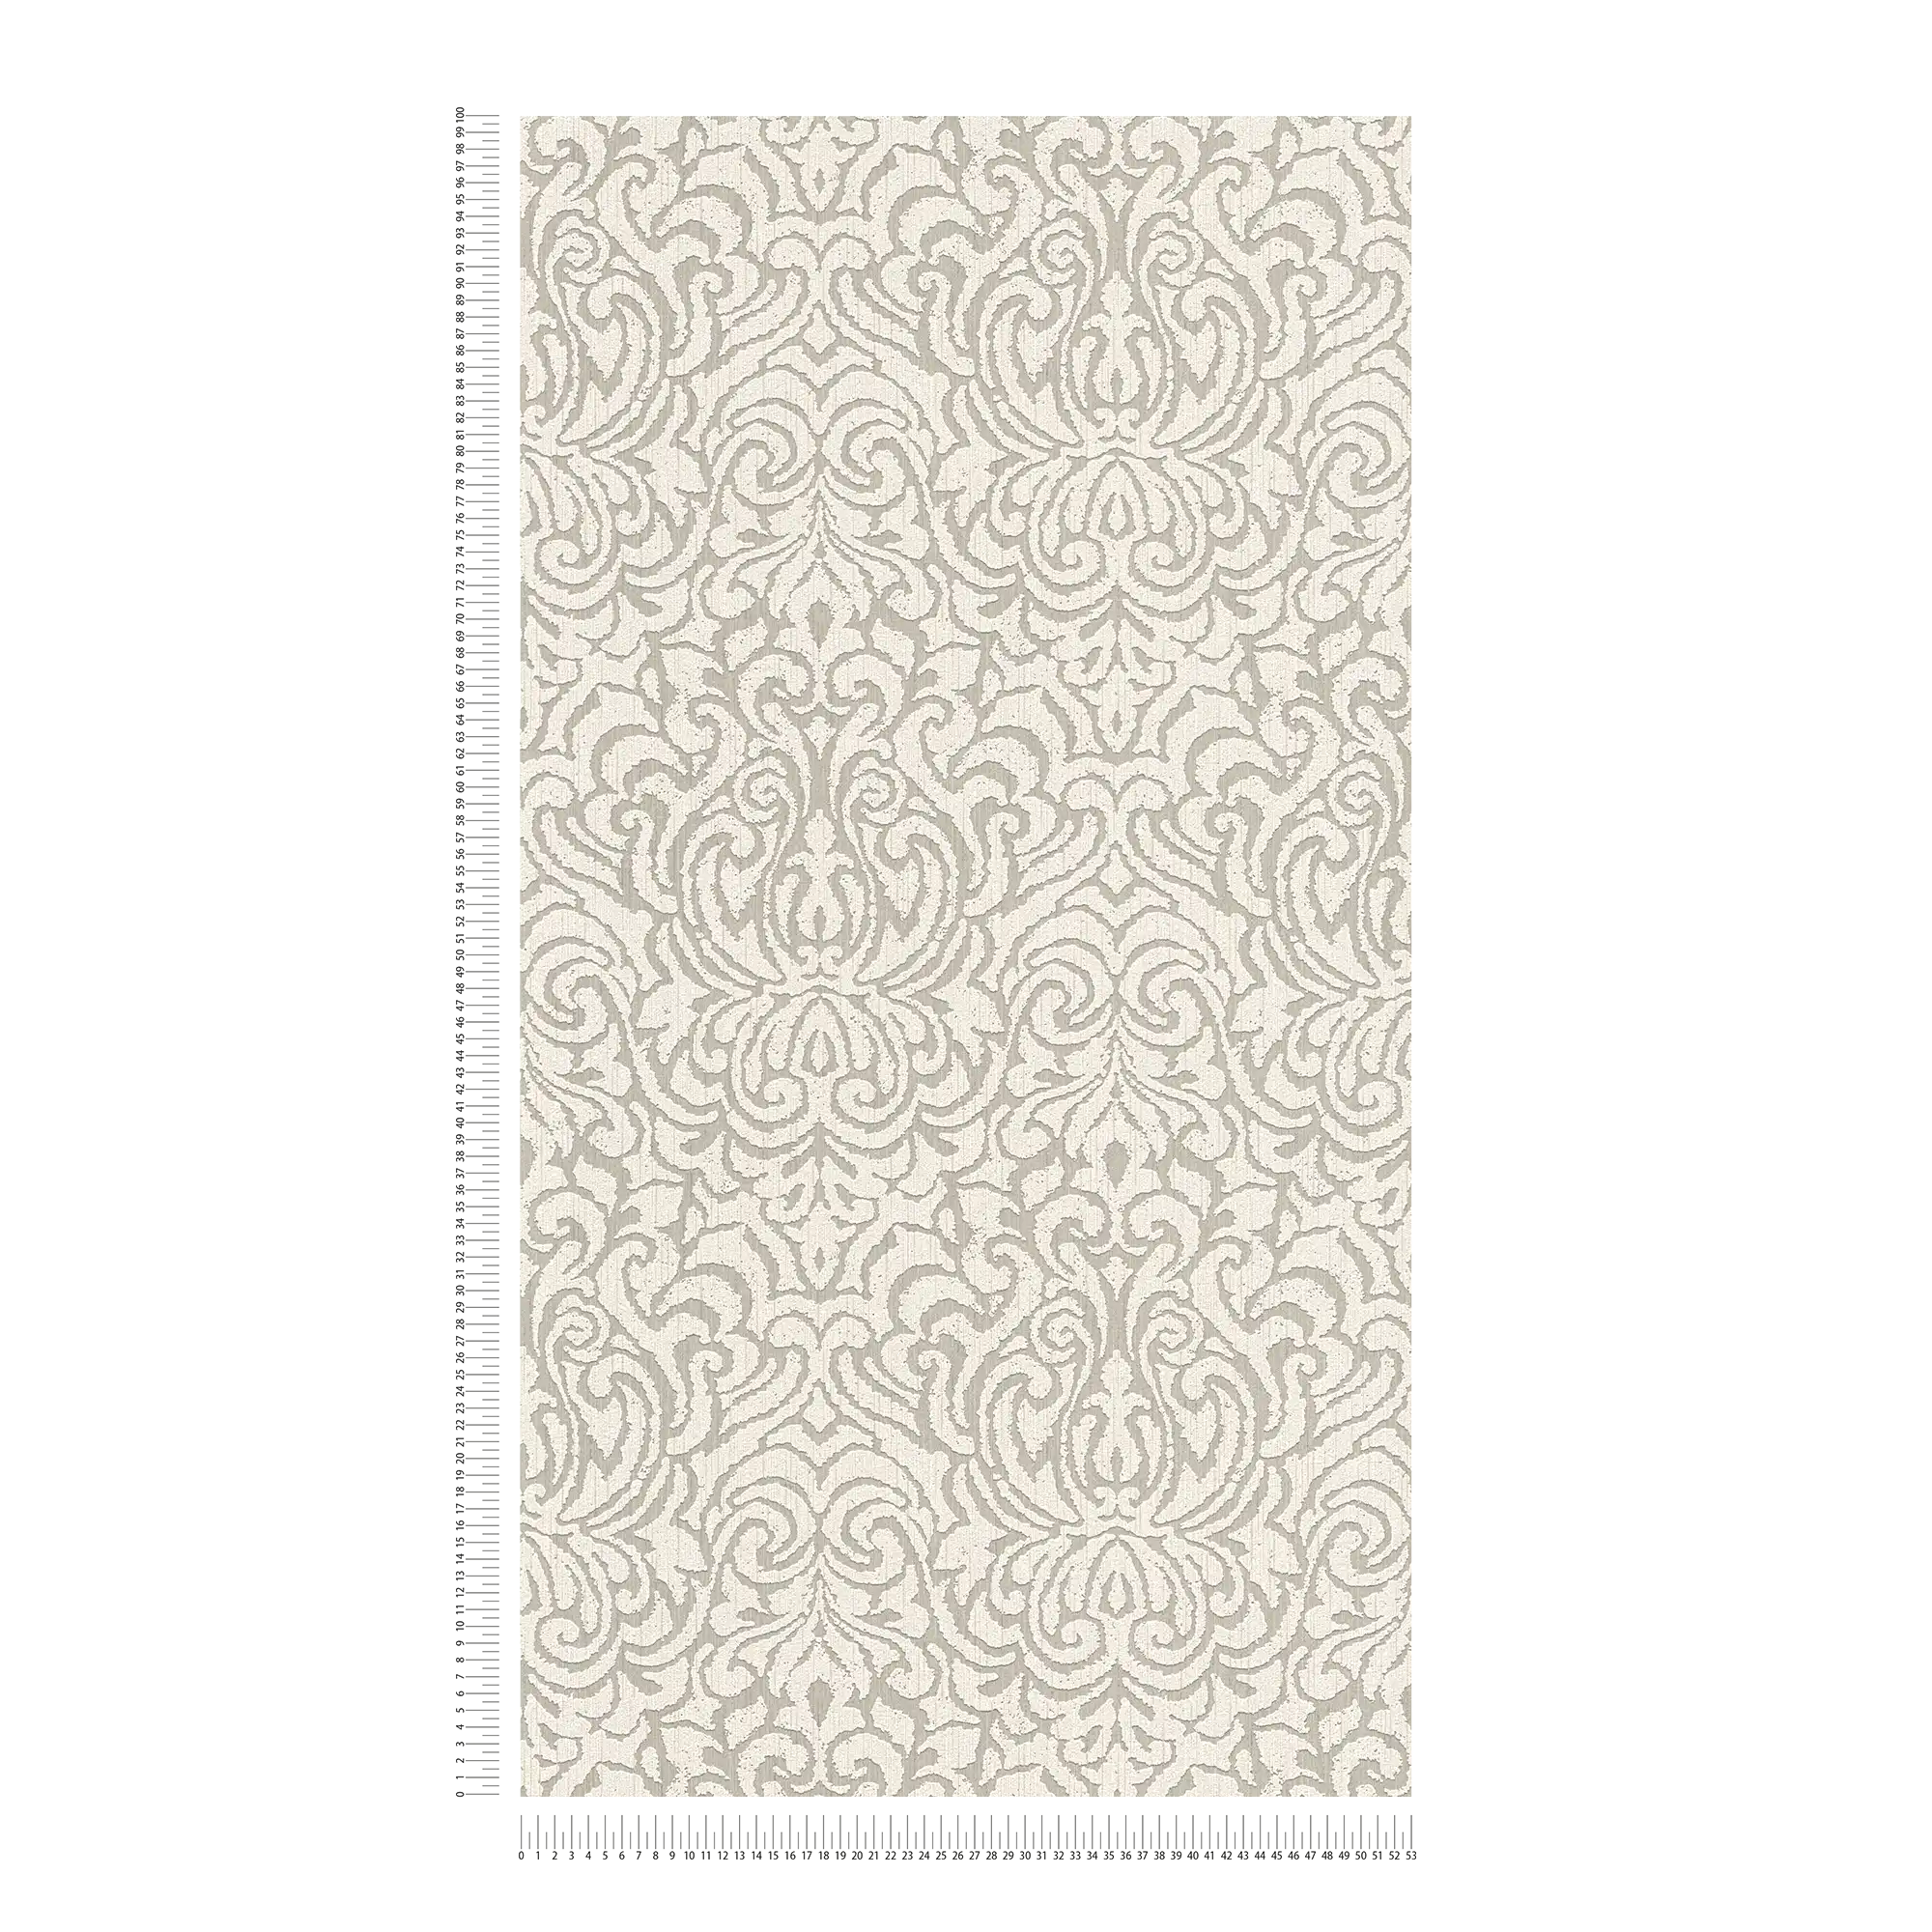             Ornement papier peint baroque look usé Shabby Chic - beige, crème
        